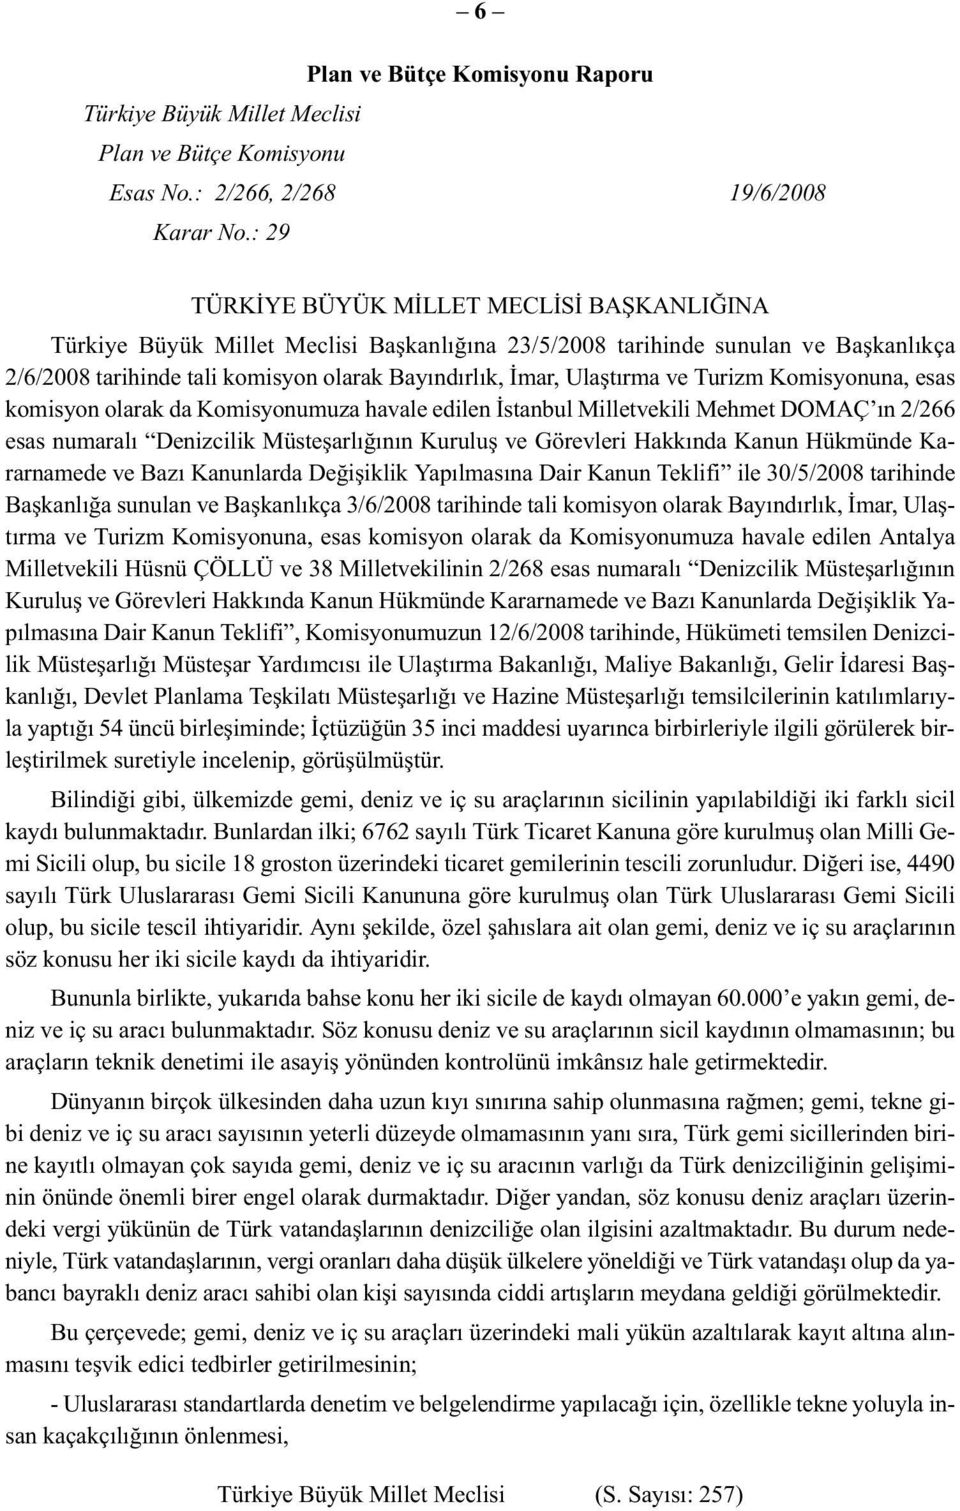 Ulaştırma ve Turizm Komisyonuna, esas komisyon olarak da Komisyonumuza havale edilen İstanbul Milletvekili Mehmet DOMAÇ ın 2/266 esas numaralı Denizcilik Müsteşarlığının Kuruluş ve Görevleri Hakkında